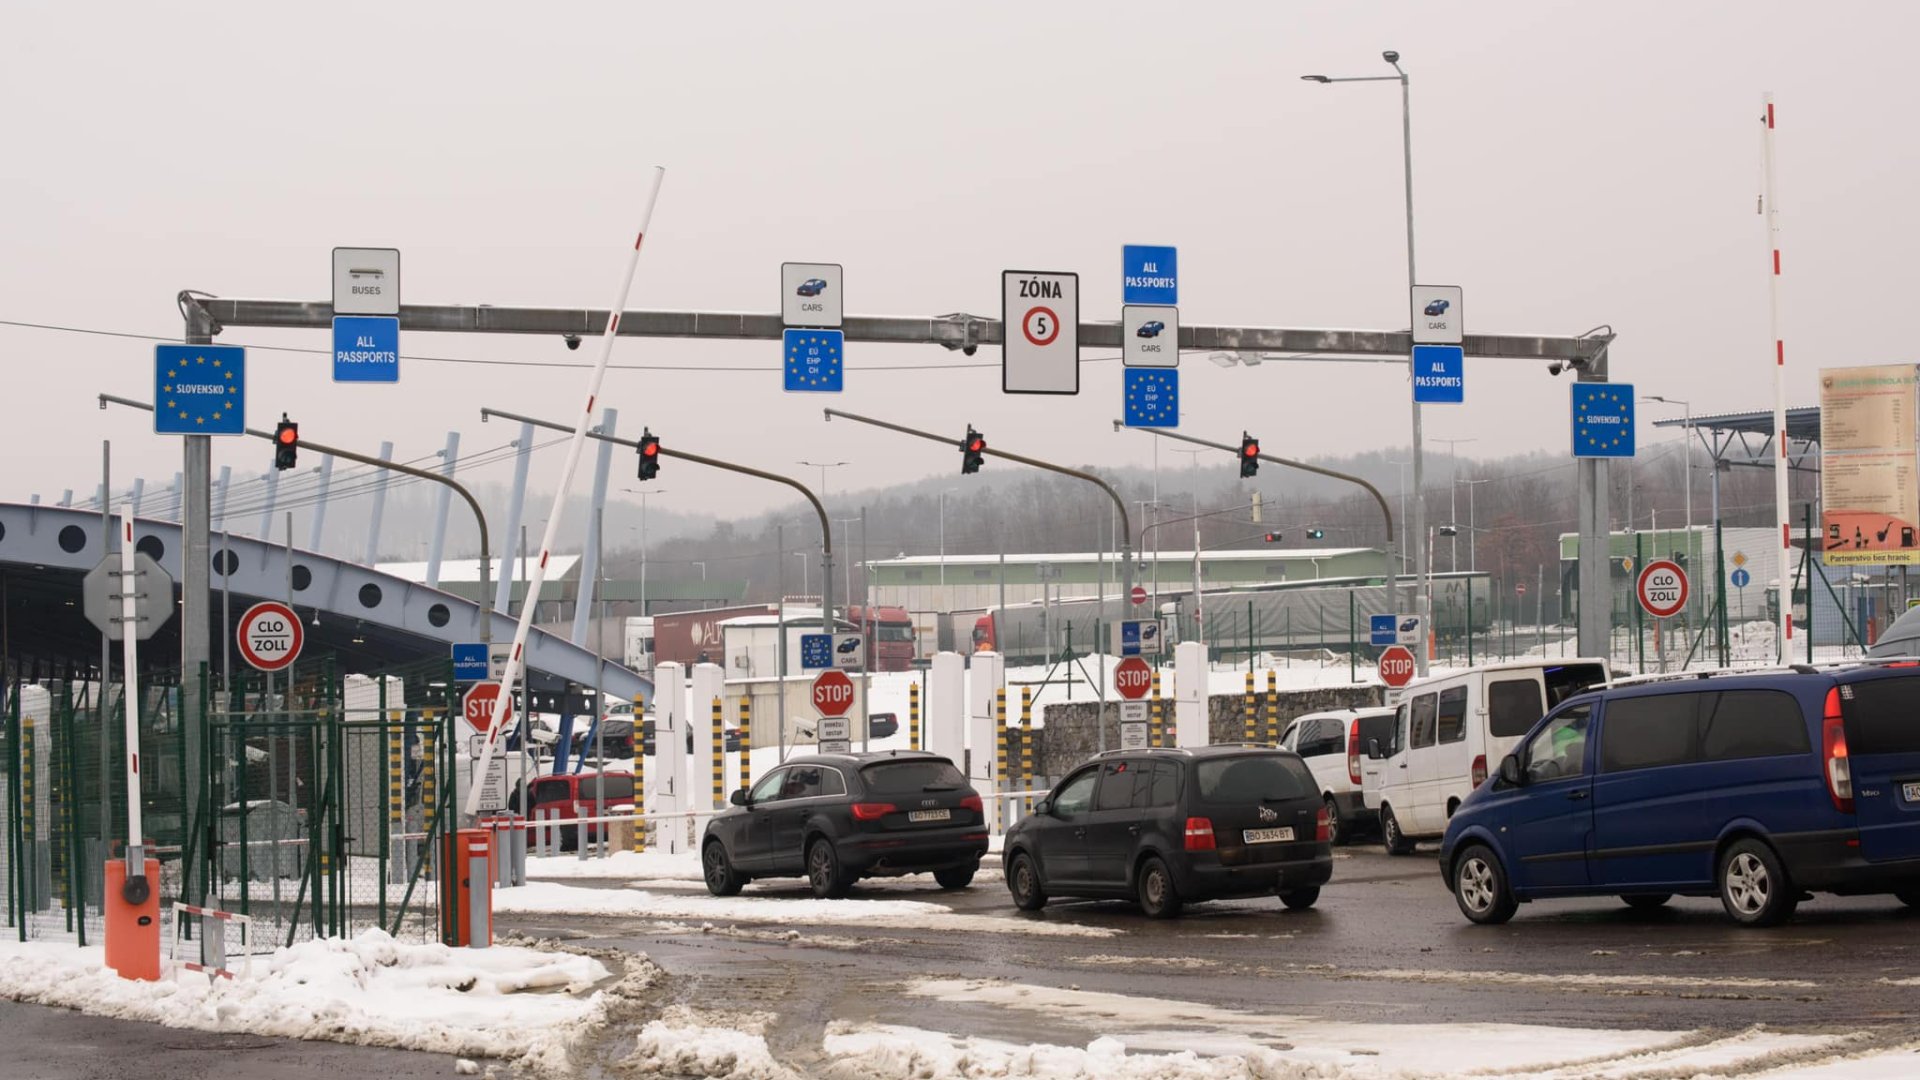 Союз автомобільних перевізників Словаччини прийняв рішення про блокування словацько-українського кордону у пункті пропуску «Вишнє Нємецьке – Ужгород» починаючи з 15:00 1 грудня.